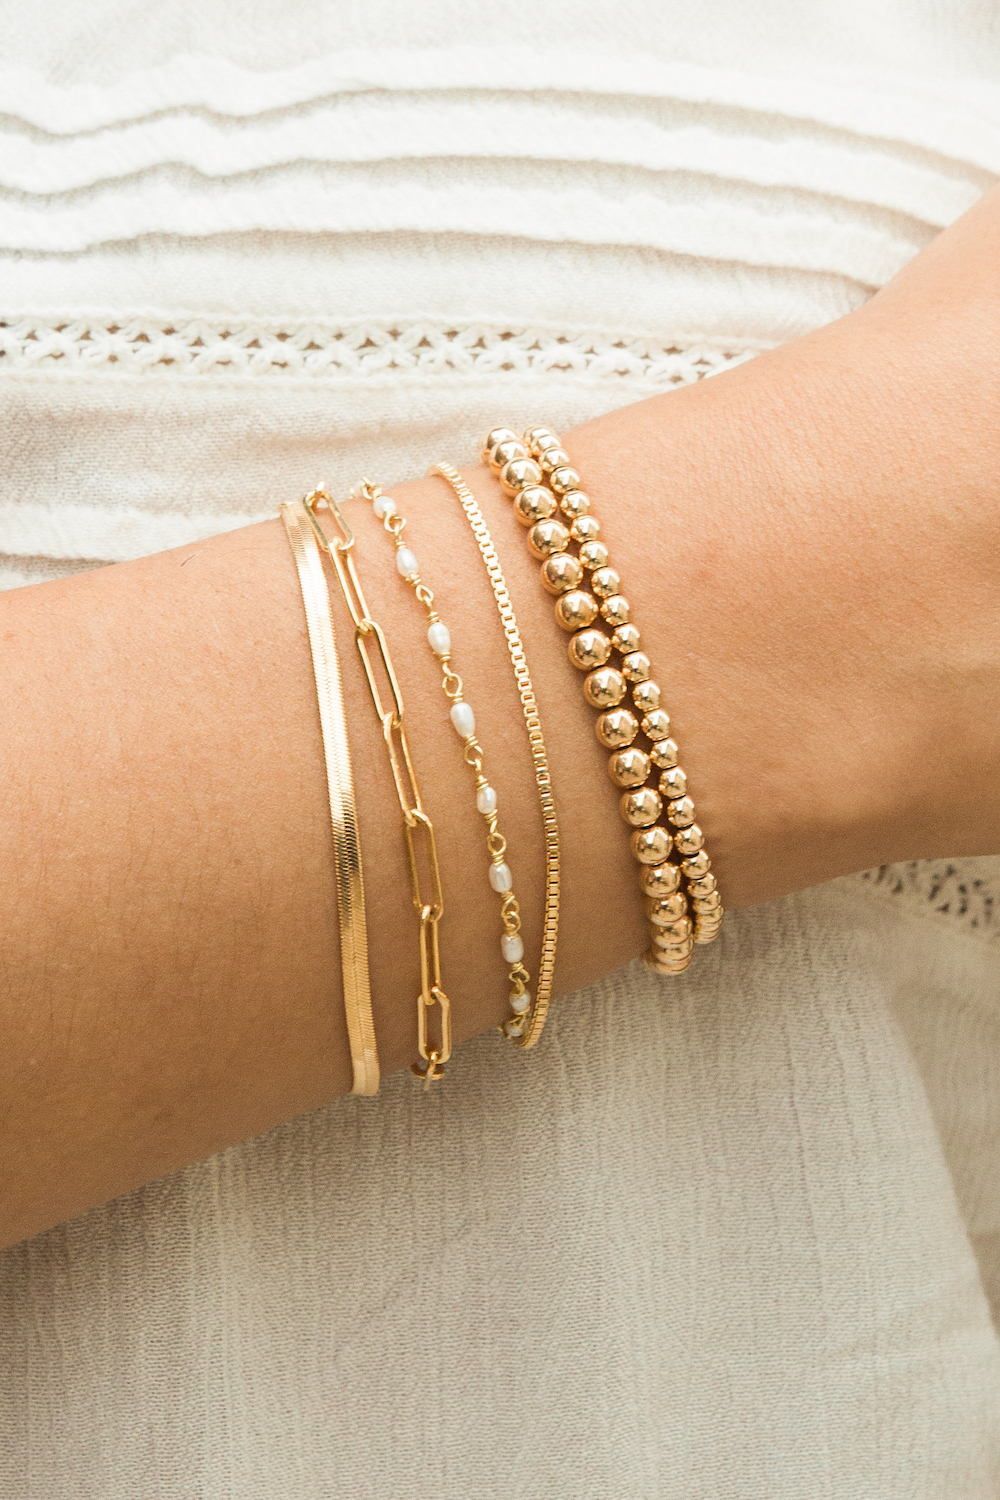 The designs of some unique bracelets